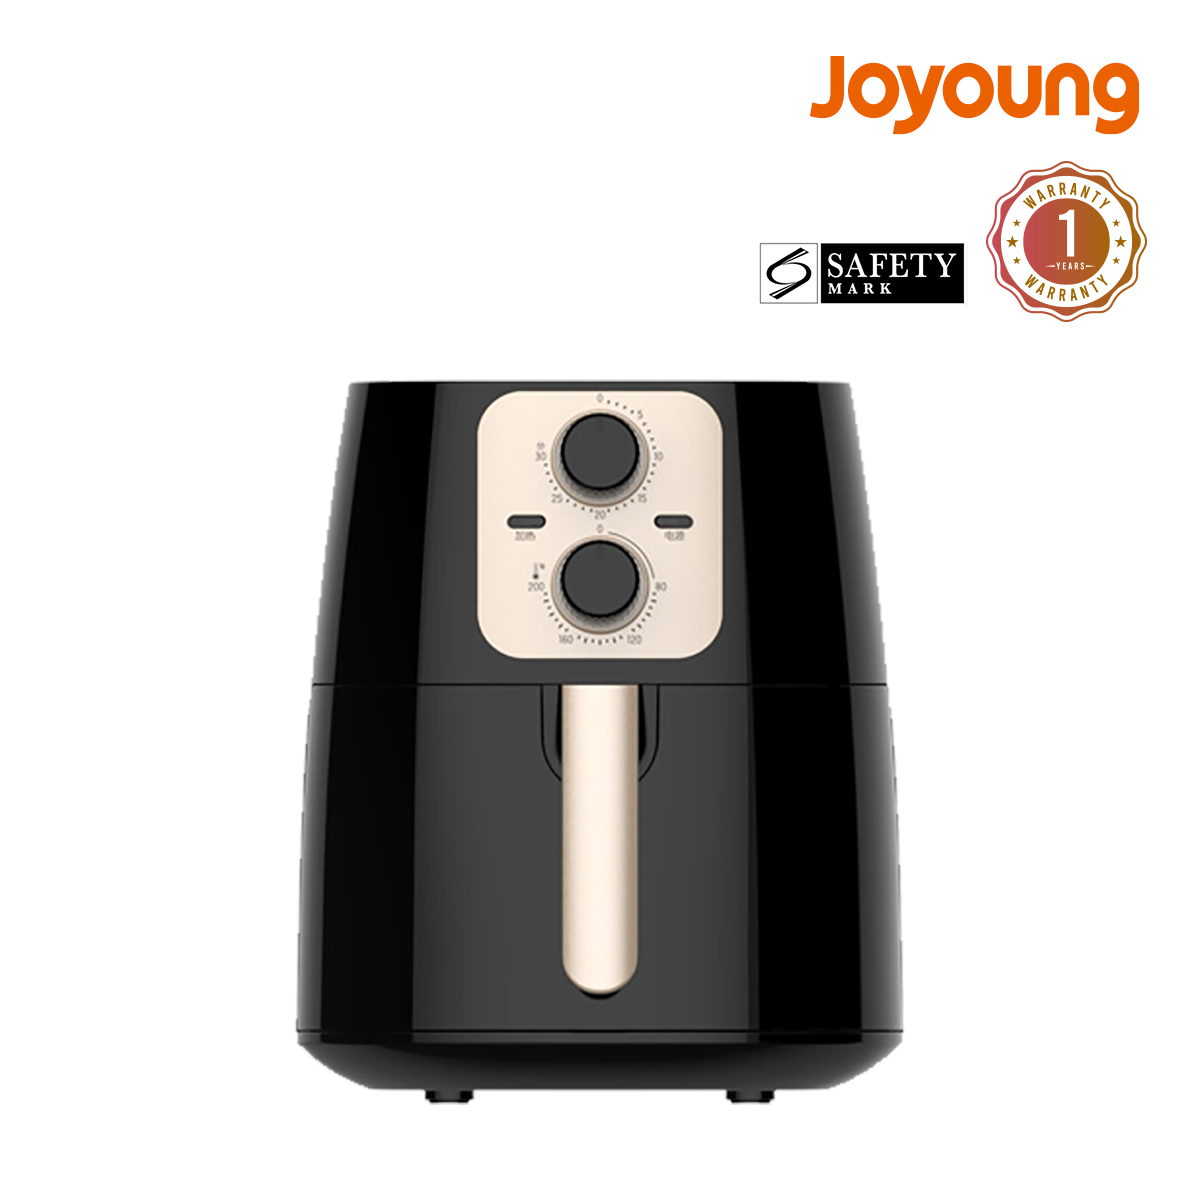 Joyoung 4.5L Large Air Fryer / Safety Mark /1 Year Warranty JT-SJOYOKL45